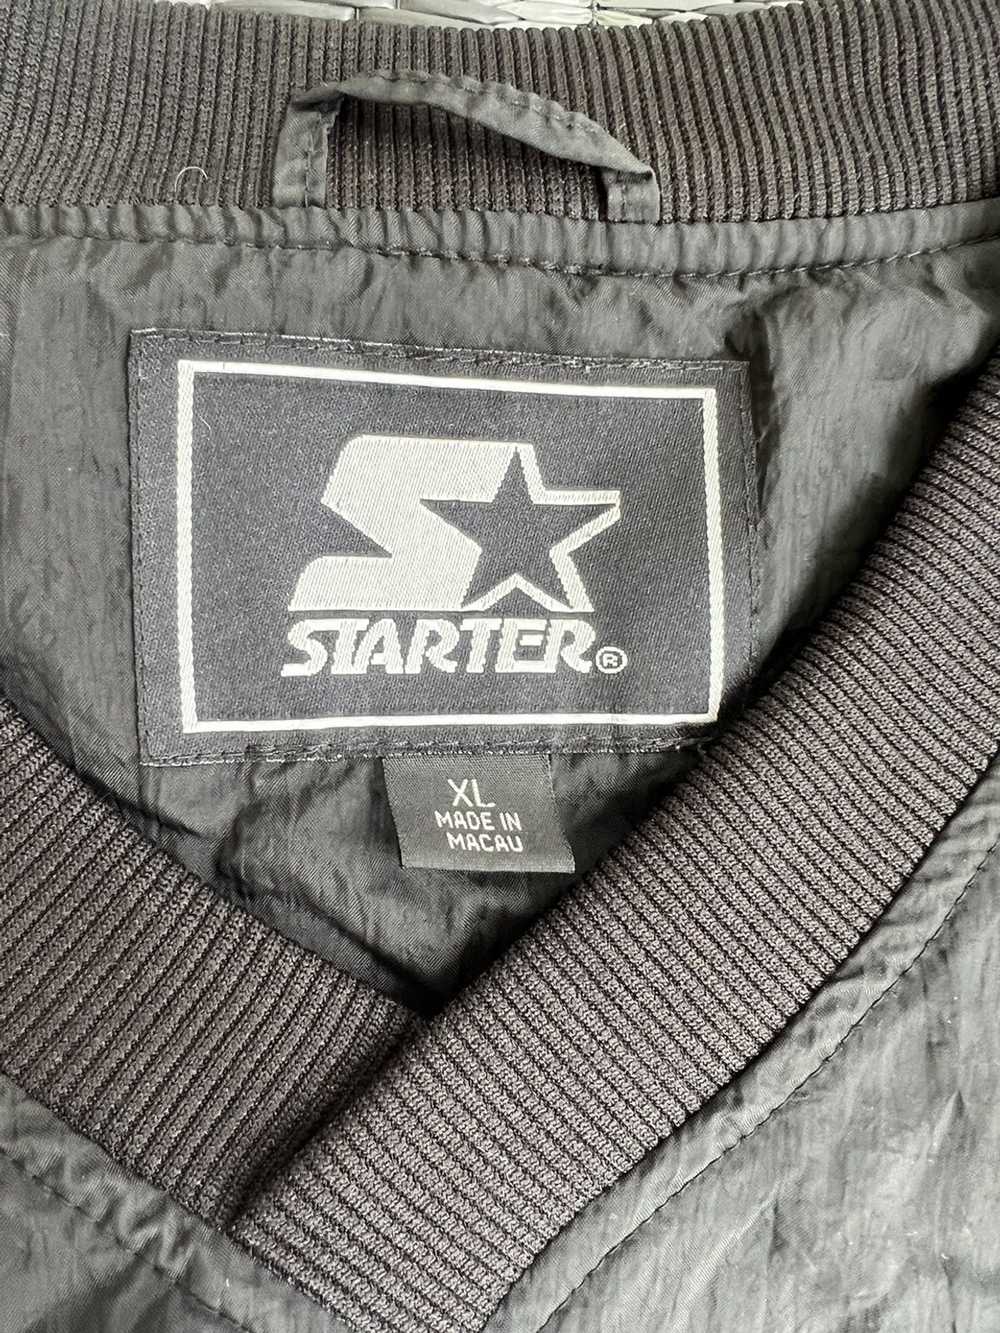 Starter × Vintage Vintage starter - image 2